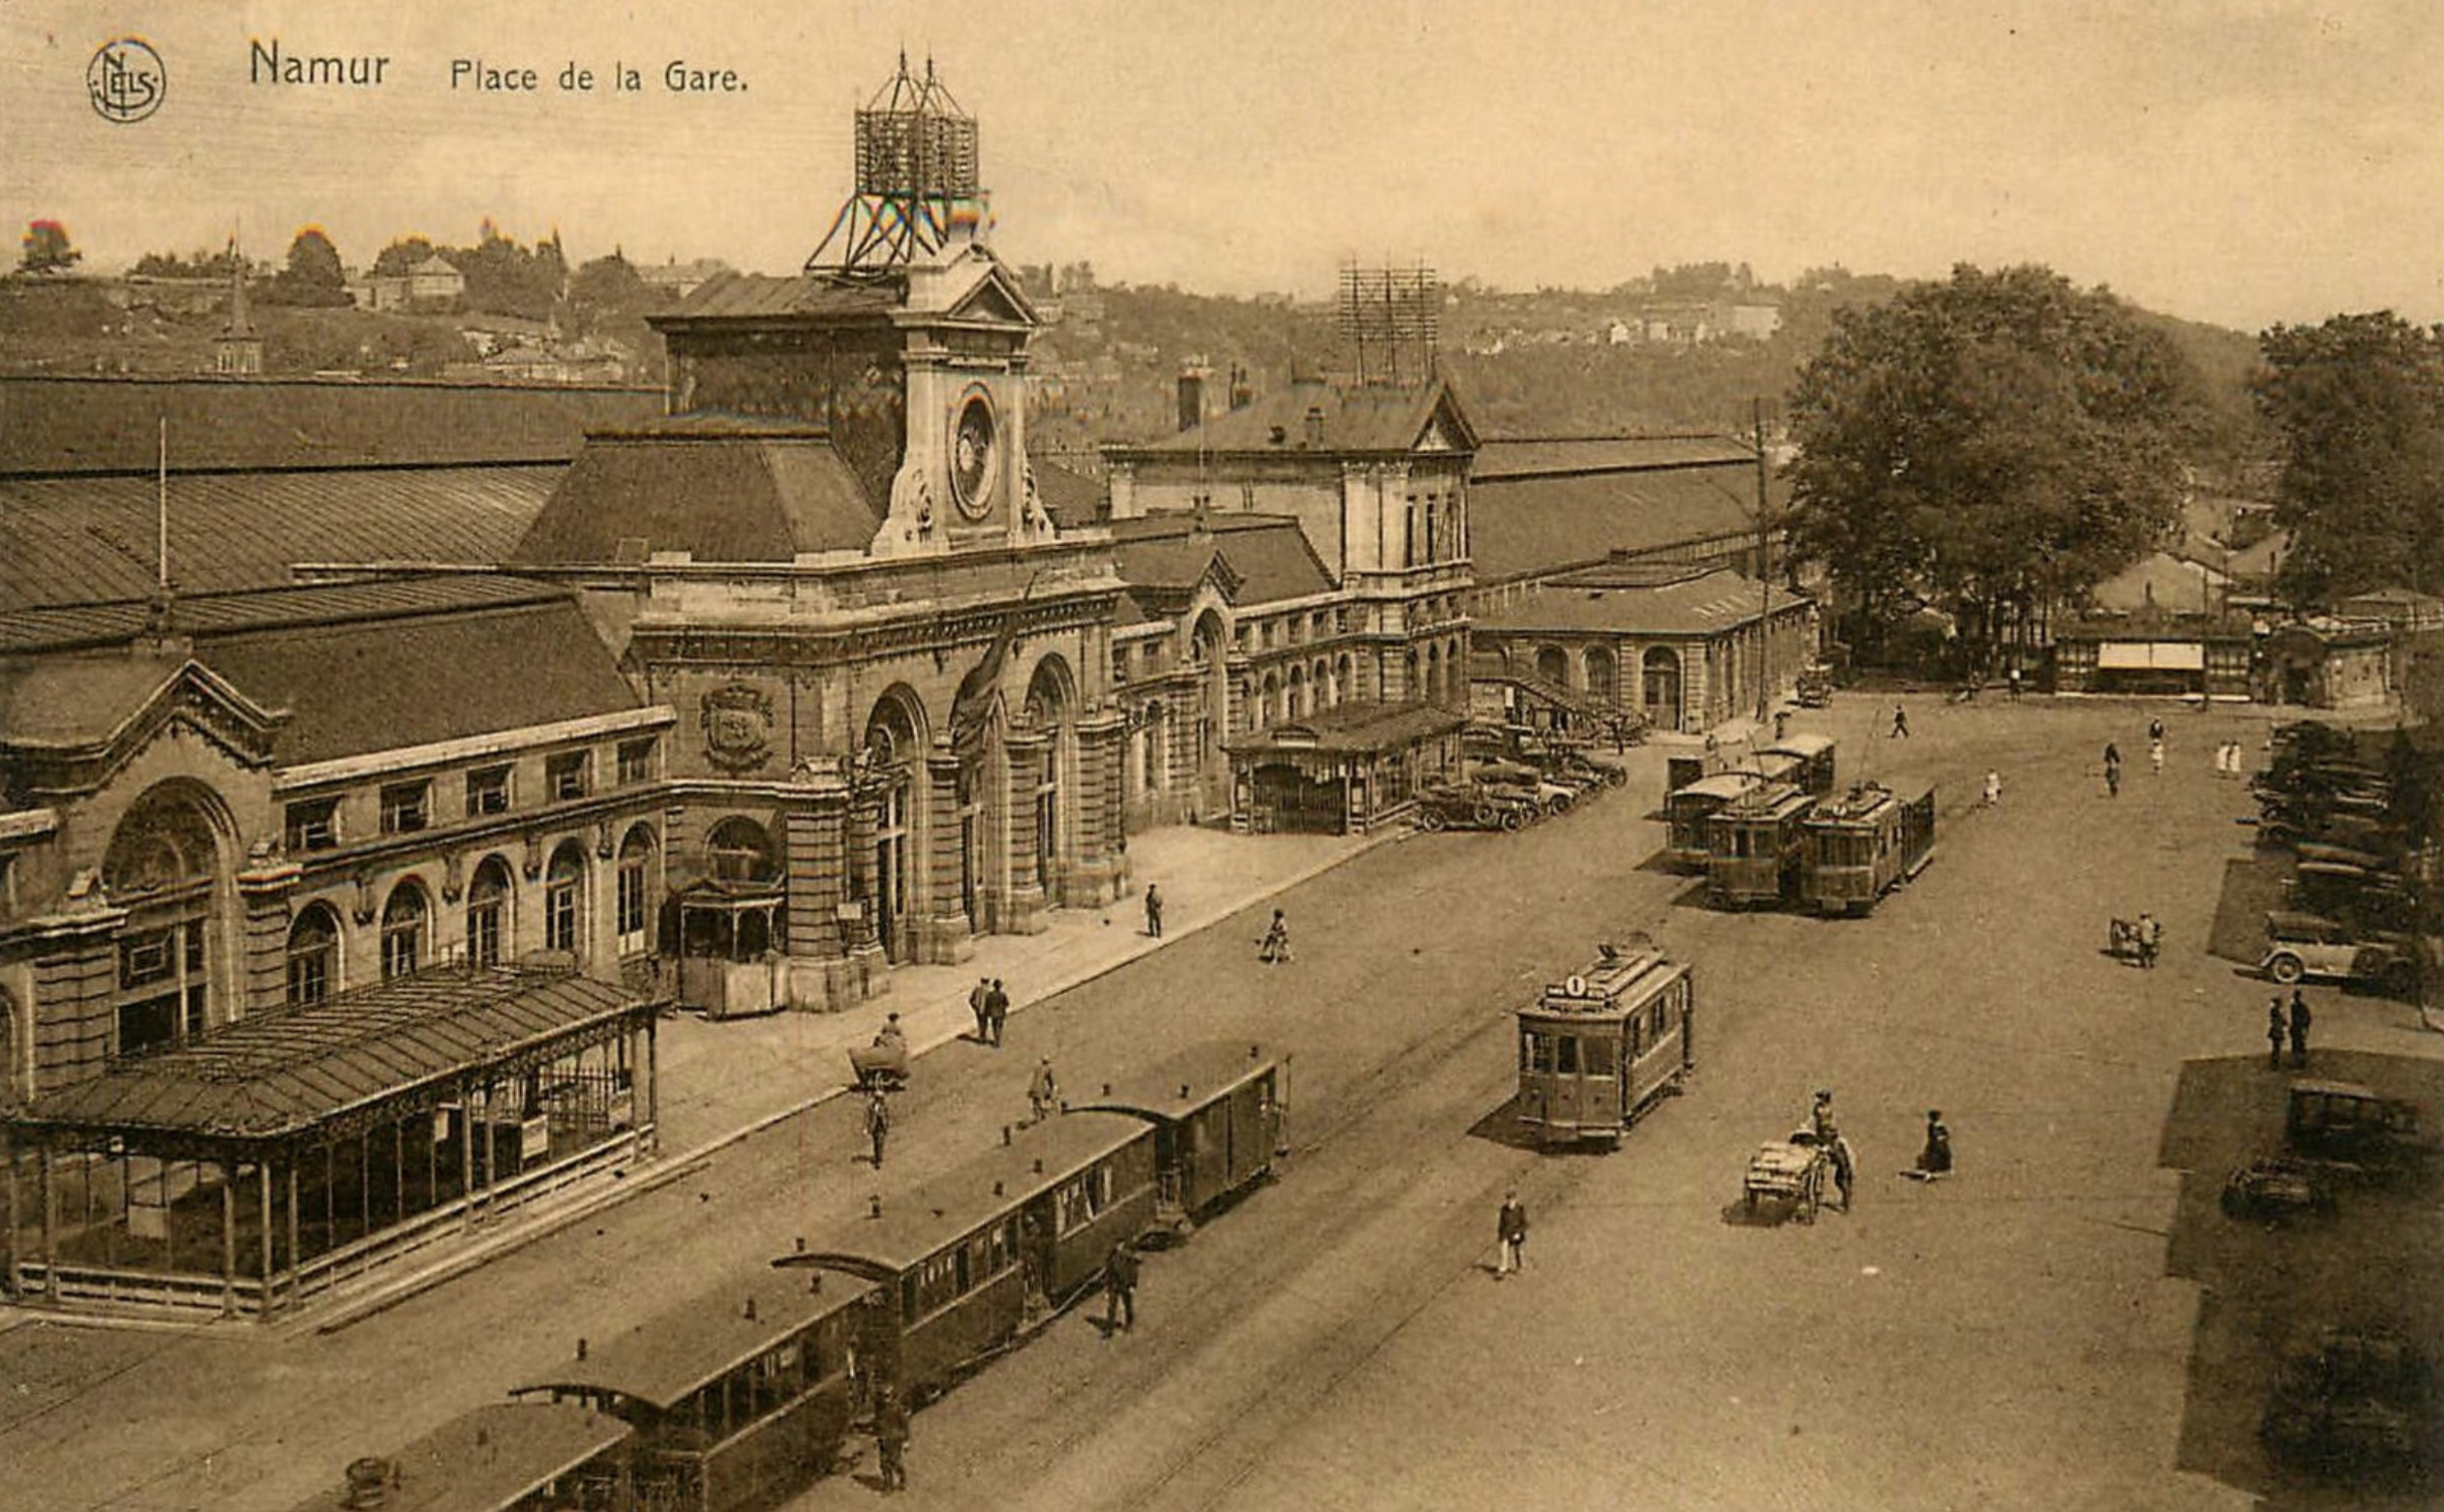 Namur-place de la gare